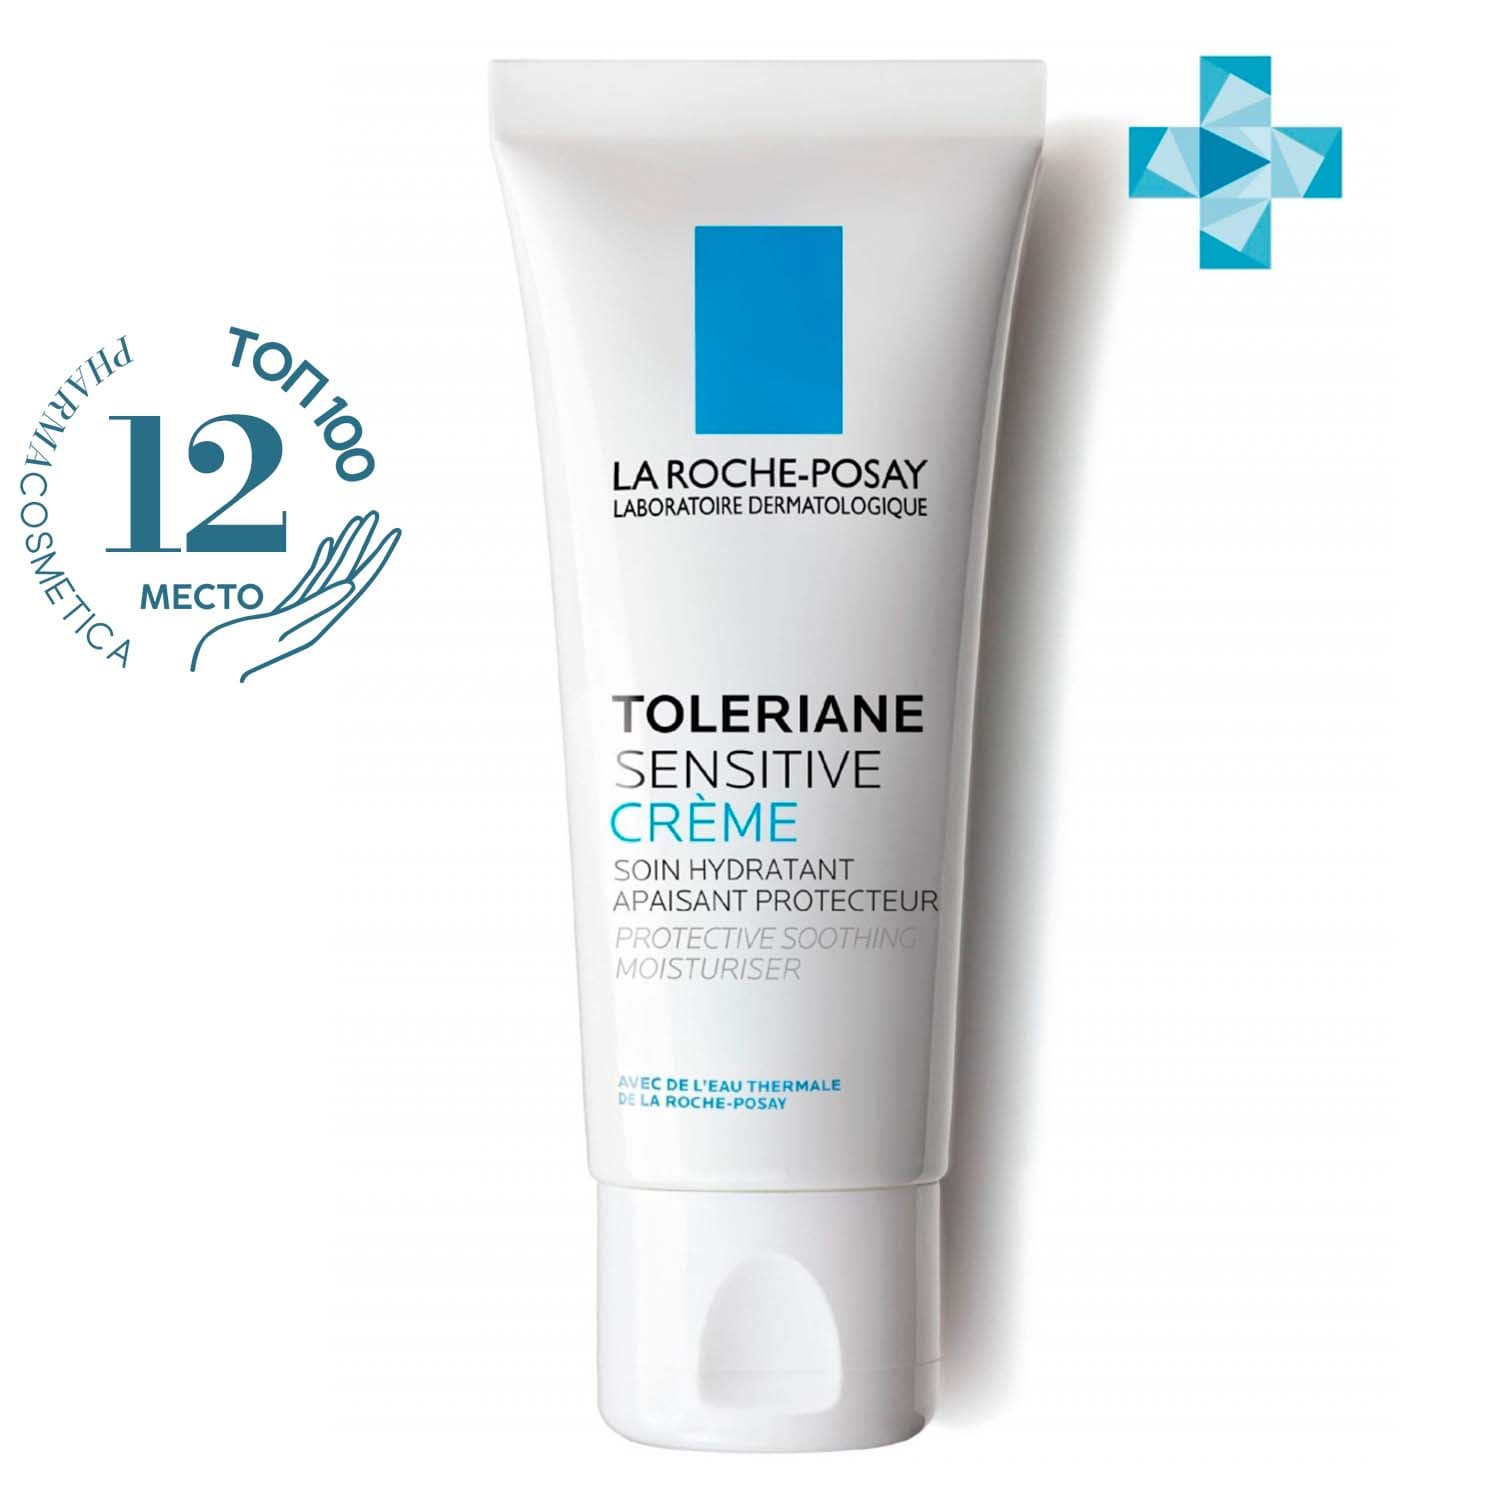 La Roche-Posay Увлажняющий крем для чувствительной кожи с легкой текстурой Sensitive, 40 мл (La Roche-Posay, Toleriane)